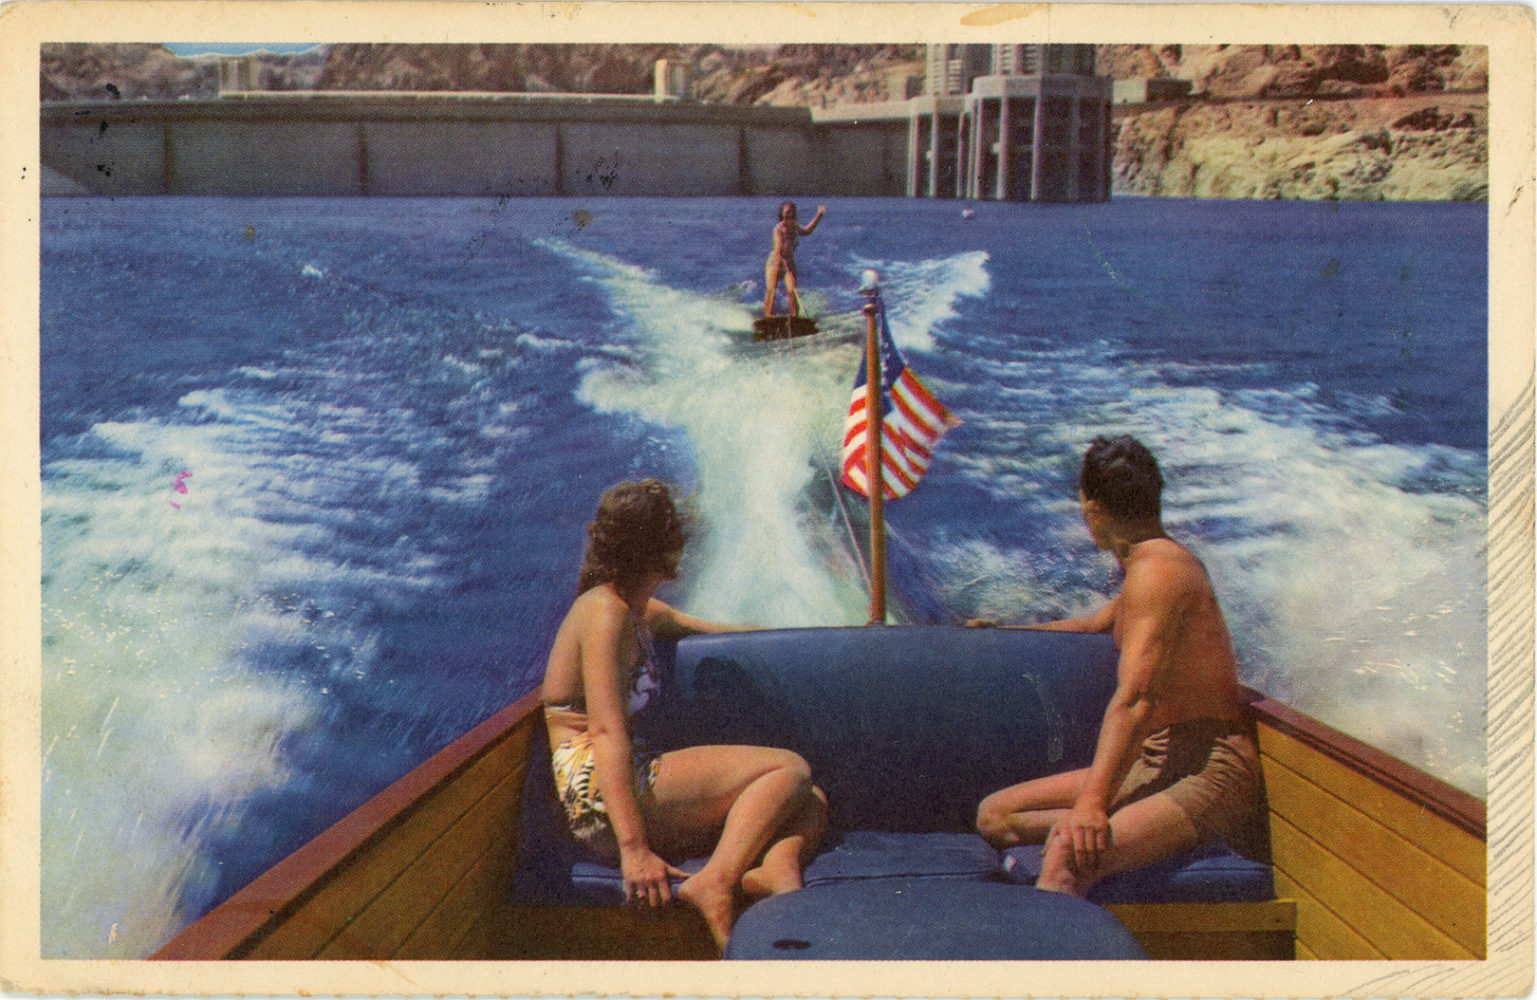 Postcard to Dave and Kim 1978